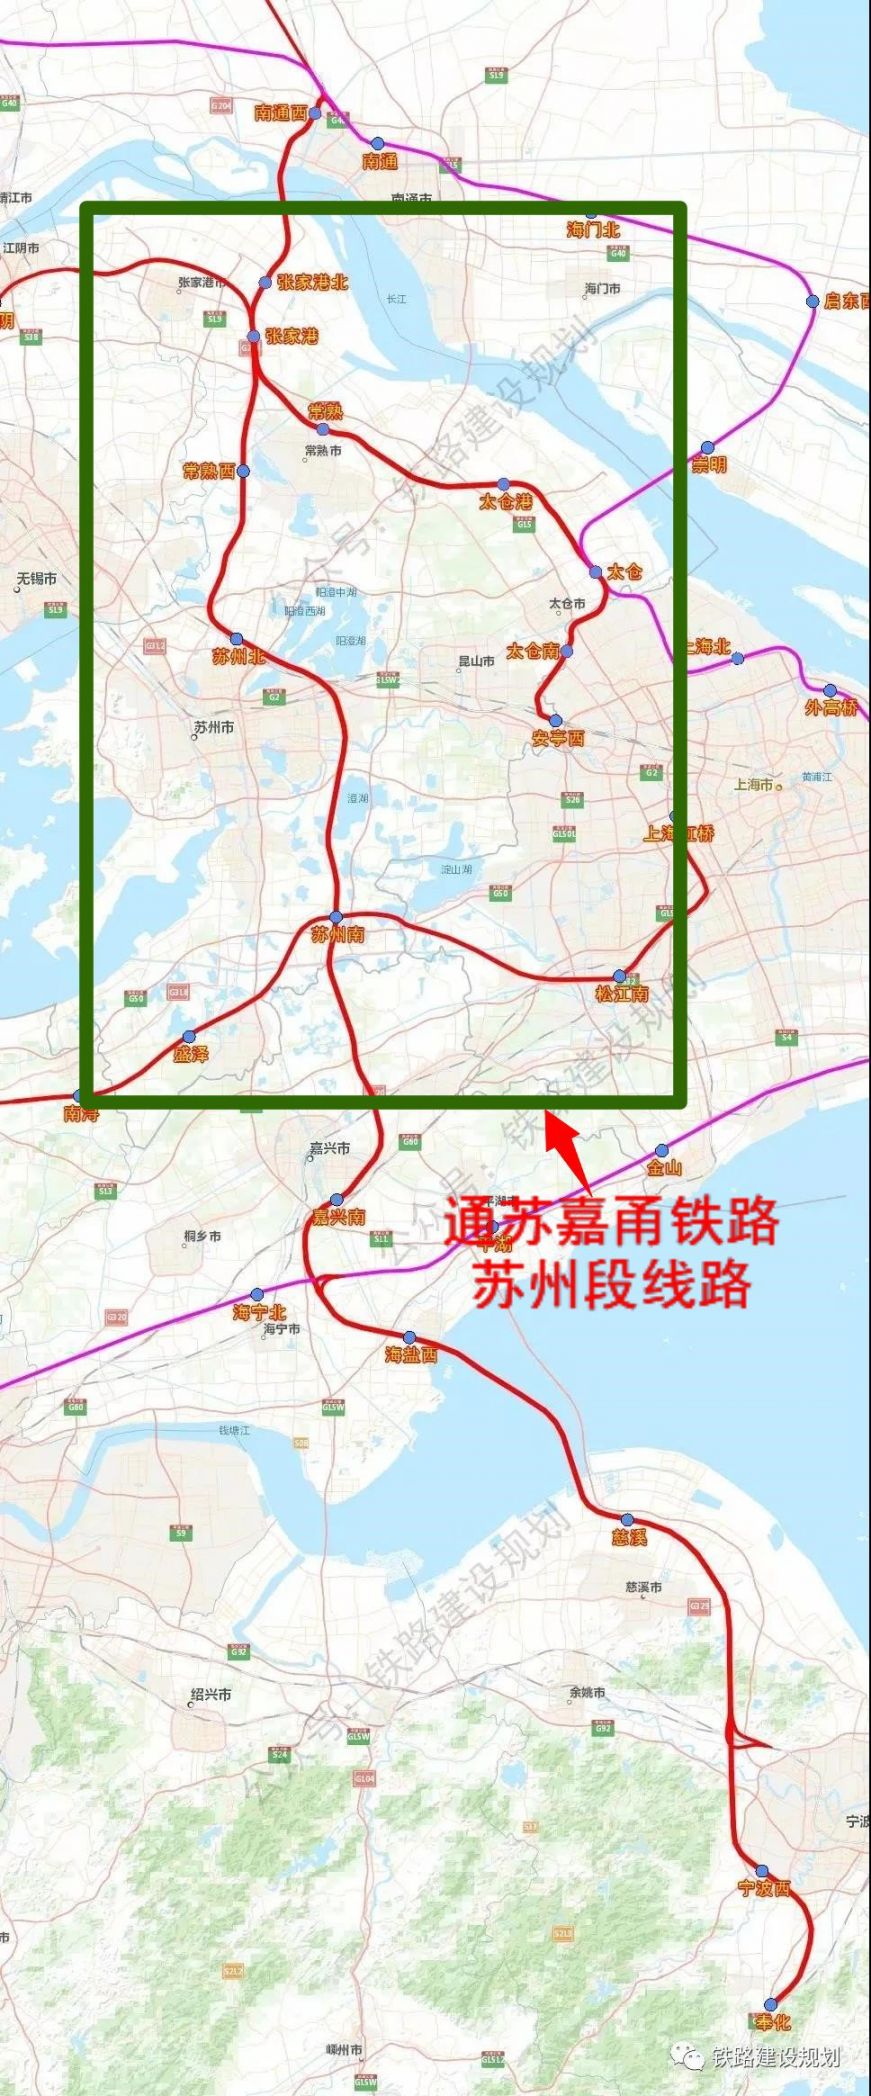 > 通苏嘉甬铁路苏州段线路图     图片来源:苏州规划   线路走向